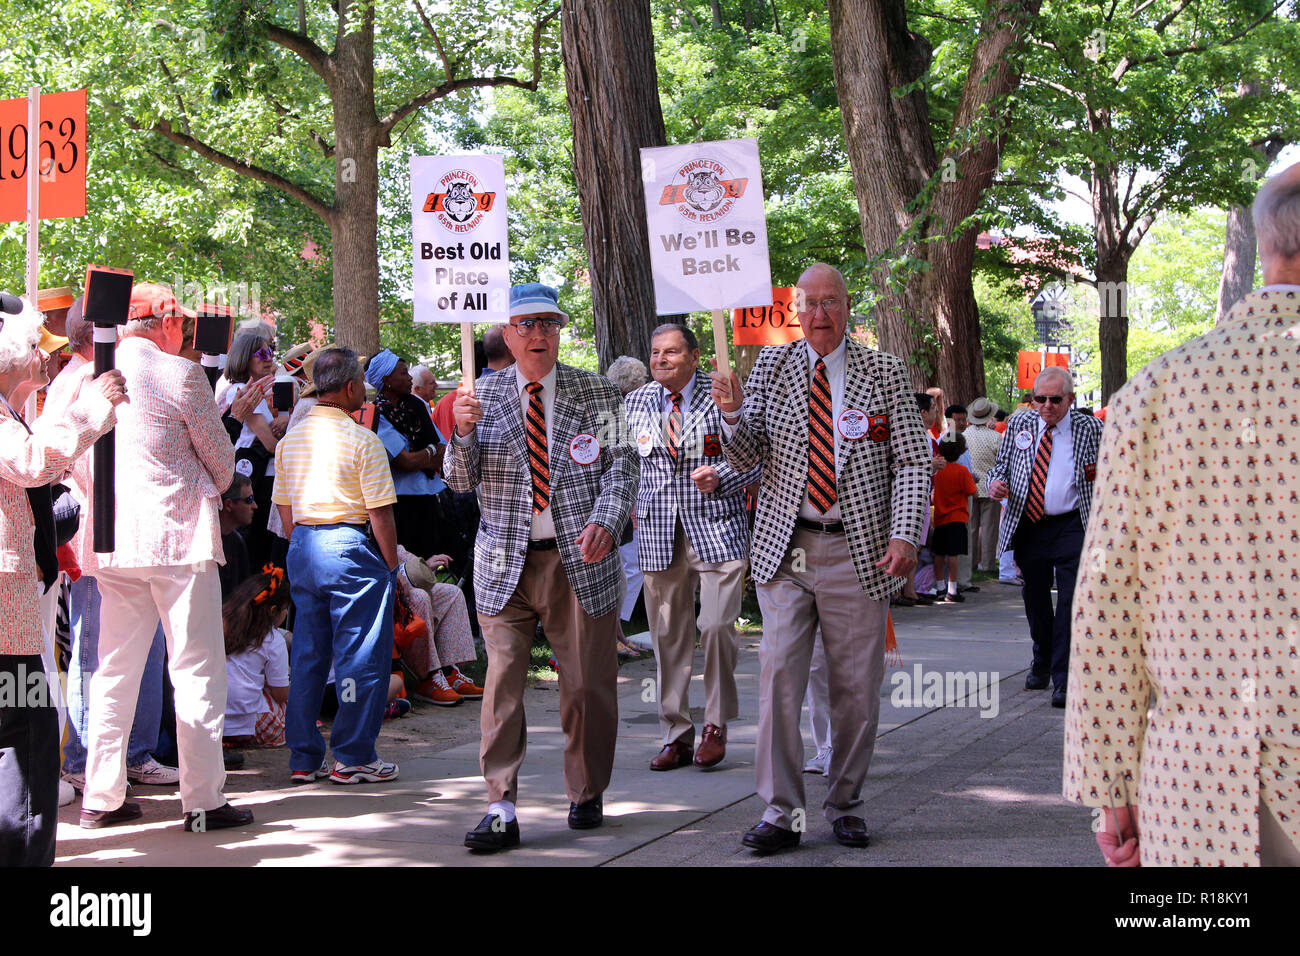 Männer von der Klasse der Besten Alten 1949 halten Schilder 'Alle' und 'Wir' an der Universität Princeton alumni Wiedervereinigungen Parade, 2014, Princeton, NJ. Stockfoto